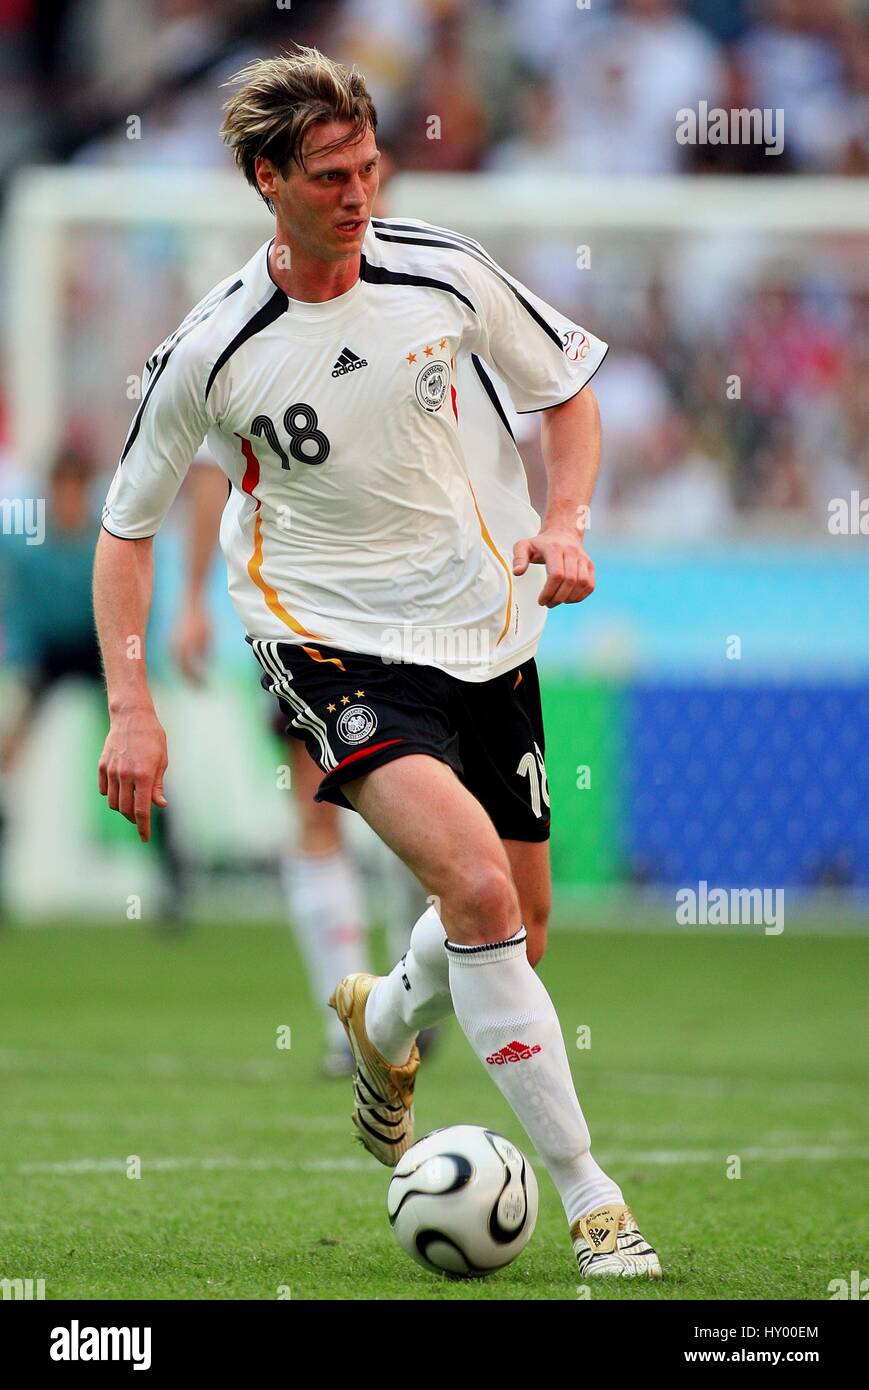 TIM BOROWSKI Deutschland & WERDER BREMEN WM München Deutschland 9. Juni  2006 Stockfotografie - Alamy